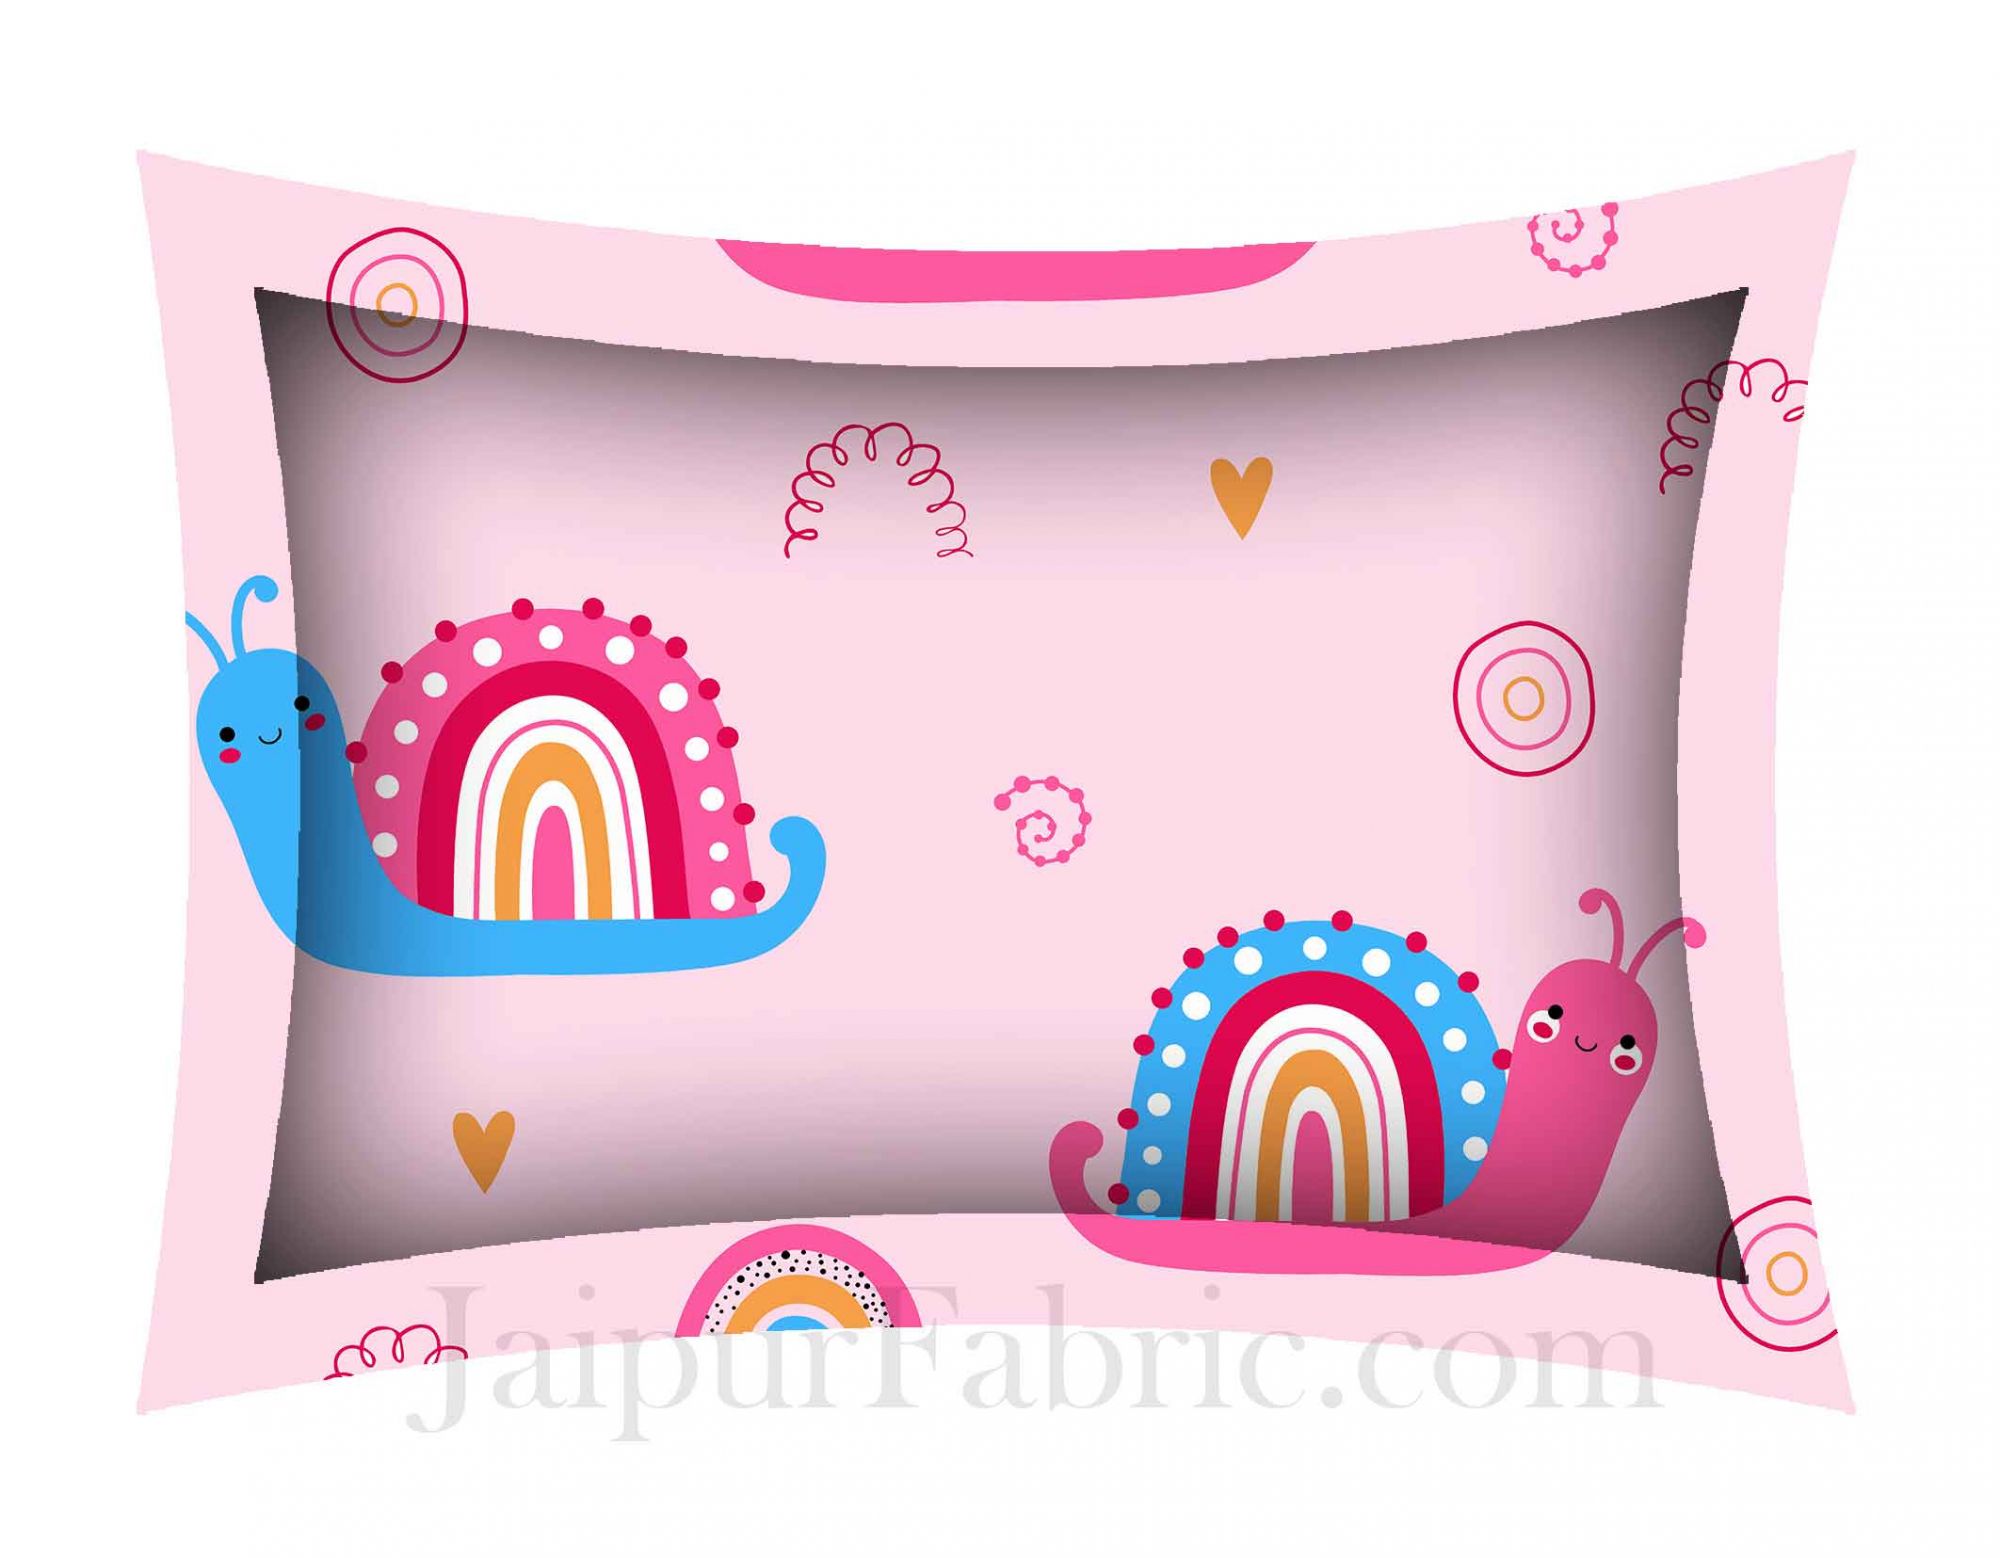 Kids Snail Baby Pink King Size Bedsheet